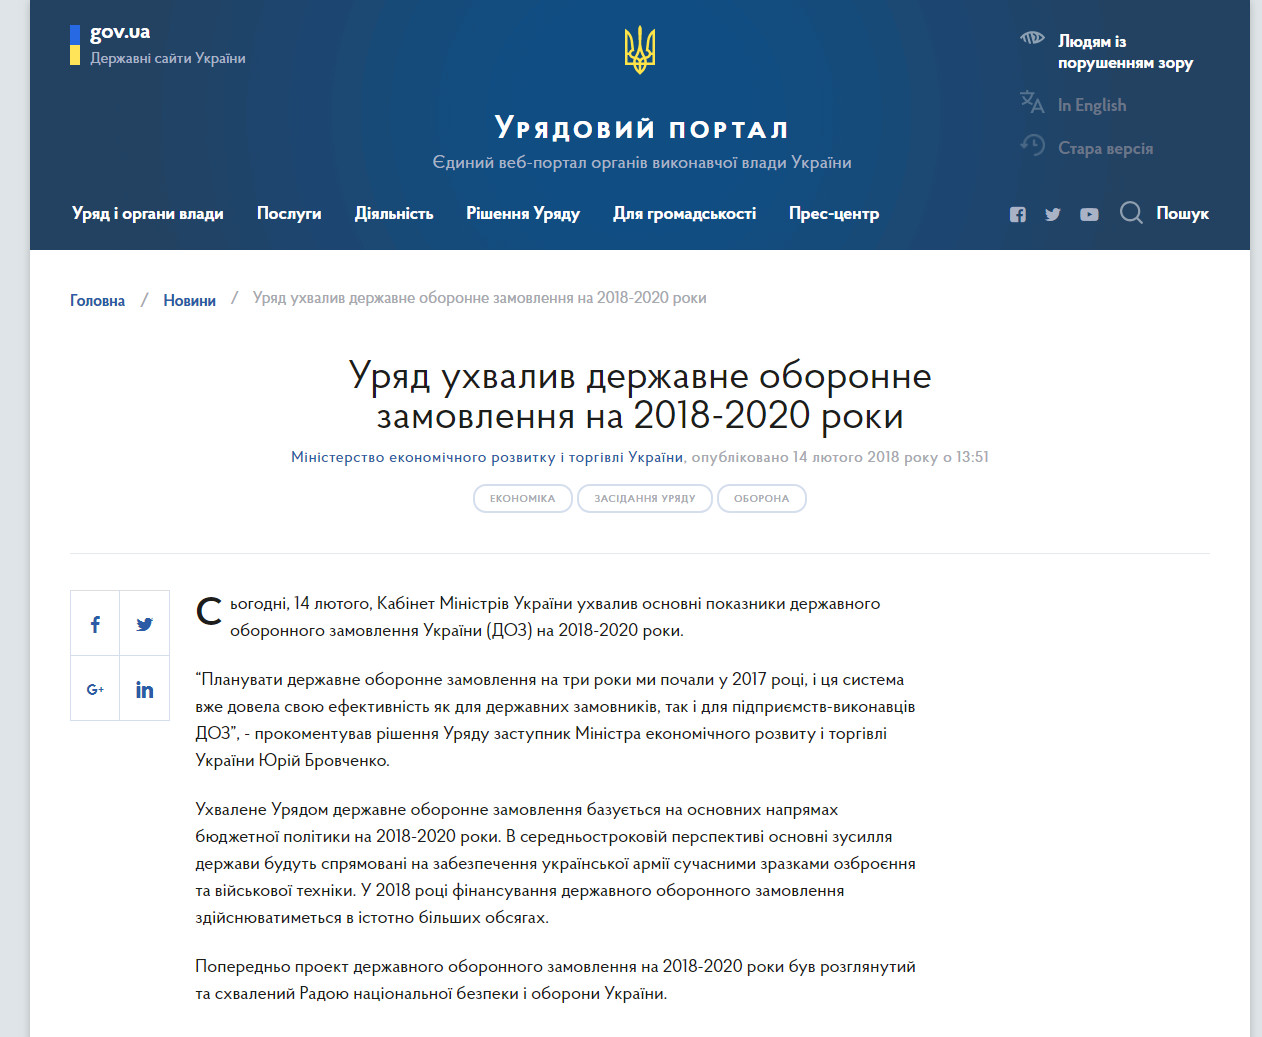 https://www.kmu.gov.ua/ua/news/uryad-uhvaliv-derzhavne-oboronne-zamovlennya-na-2018-2020-roki